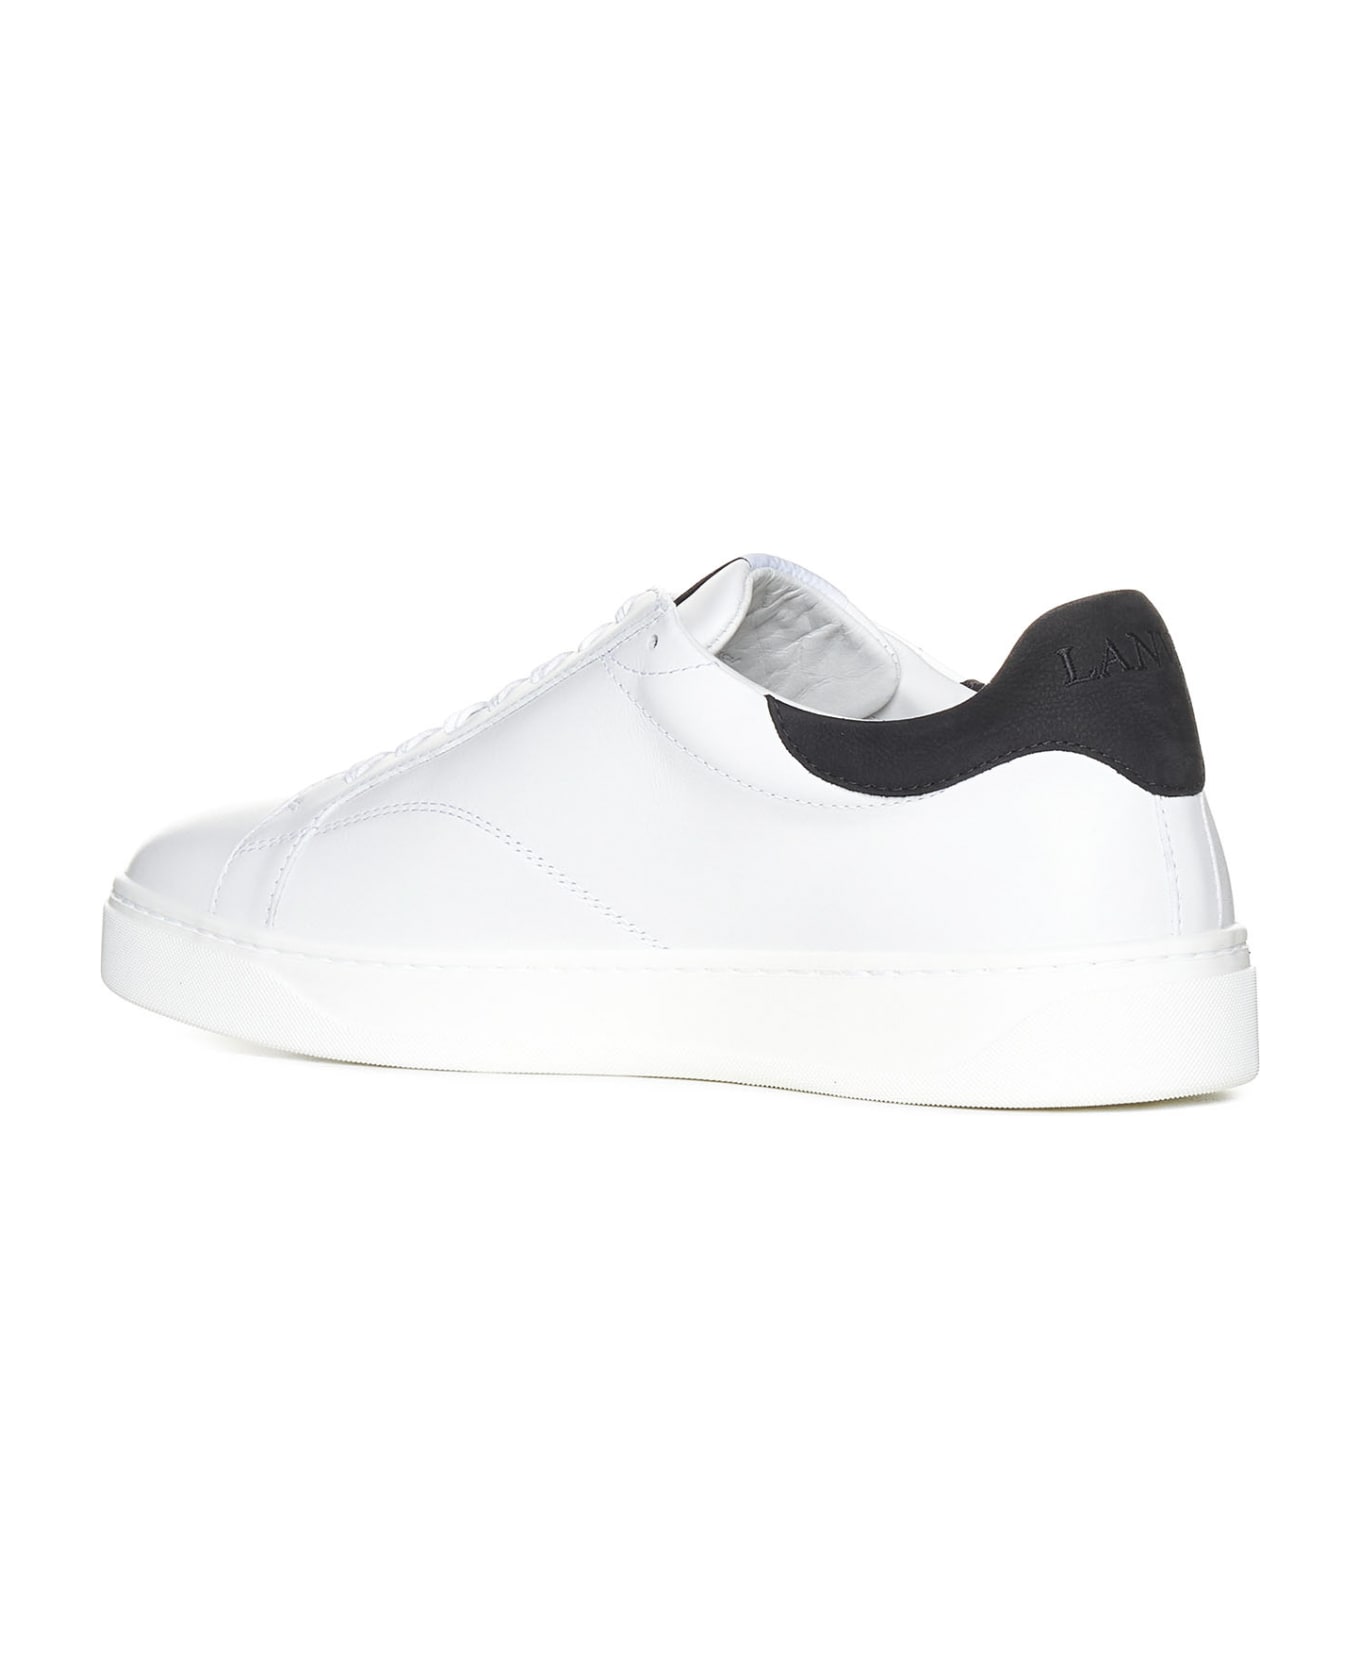 Lanvin Sneakers - White Black スニーカー